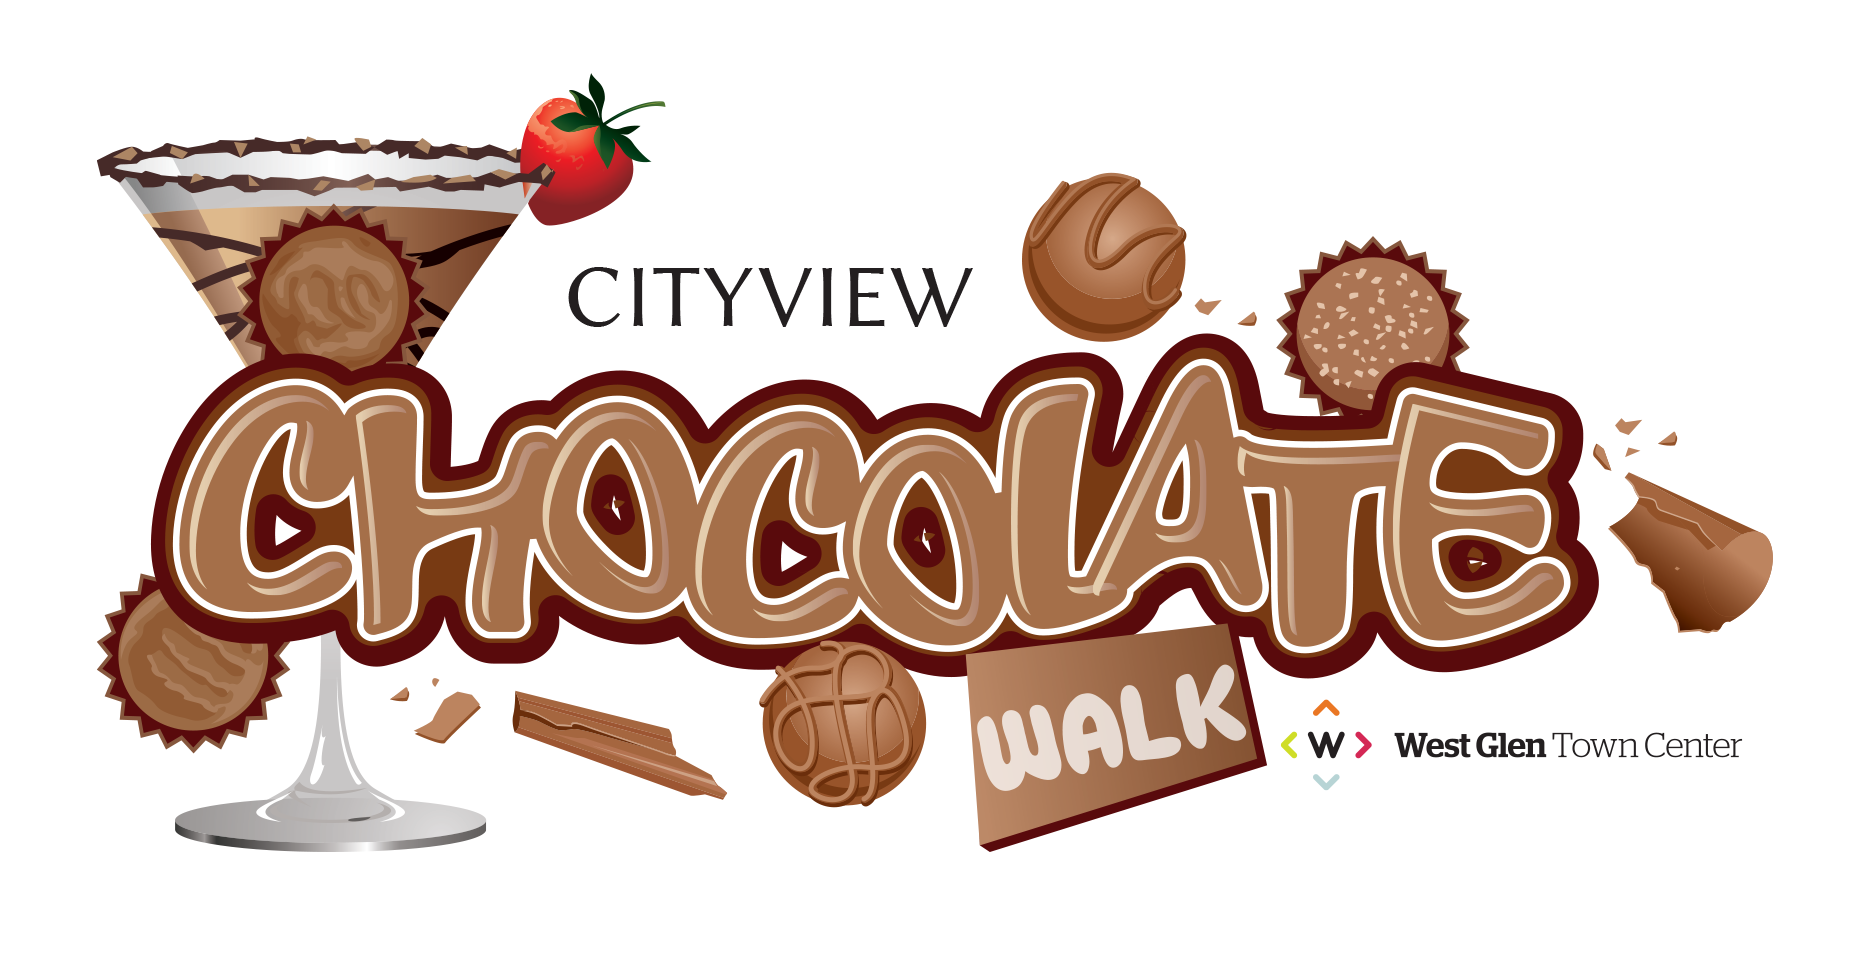 CITYVIEW's Chocolate Walk